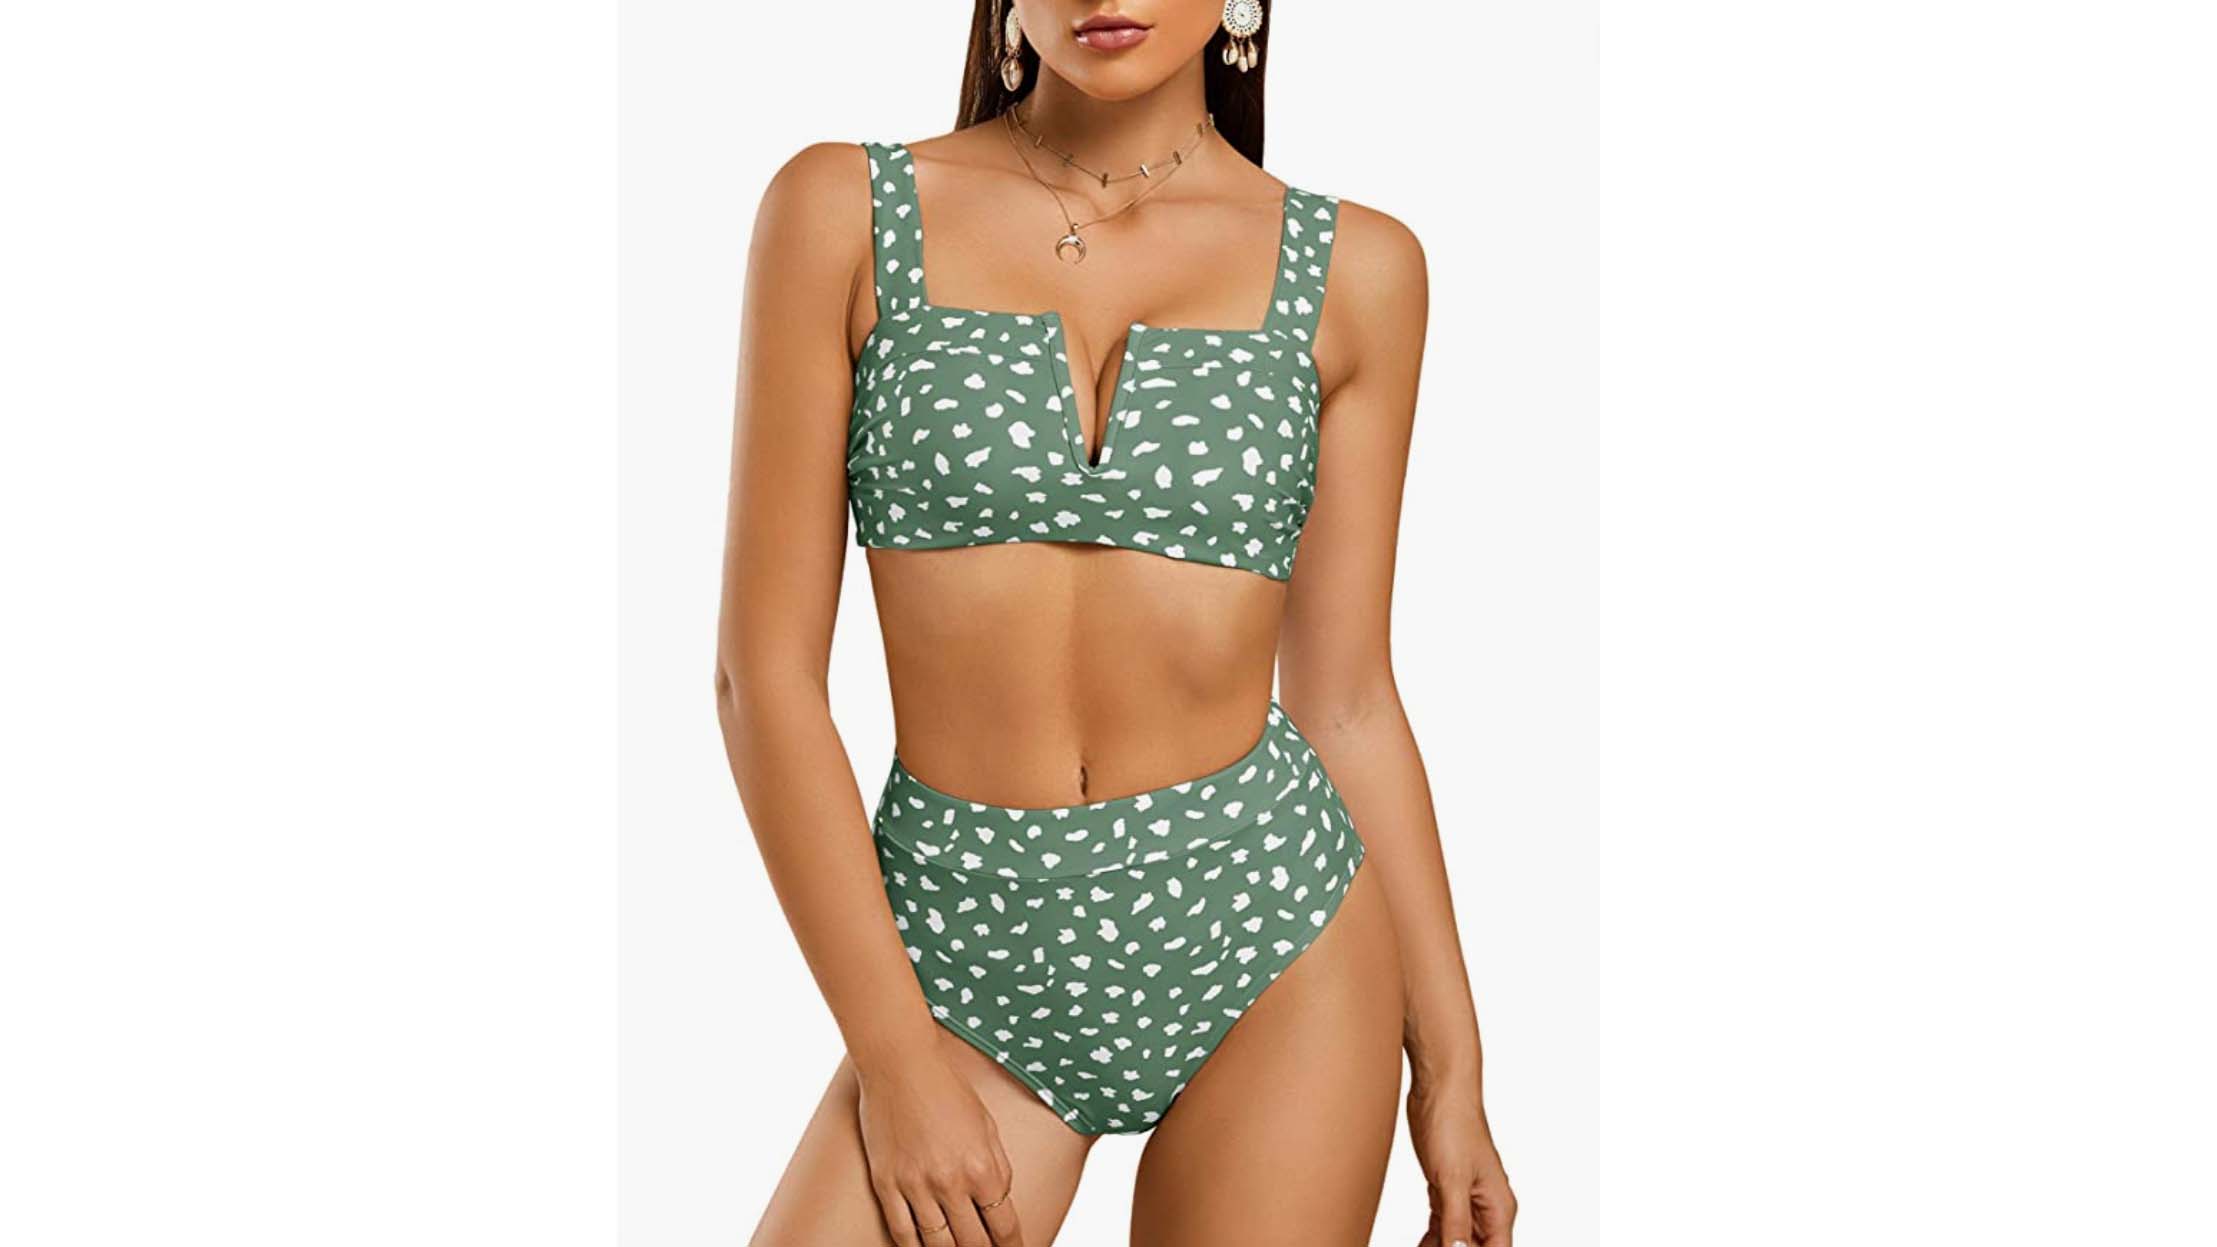 Saodimallsu - Leopard Printed High Waisted High Cut Bikini Set, $27.88 (amazon.com)